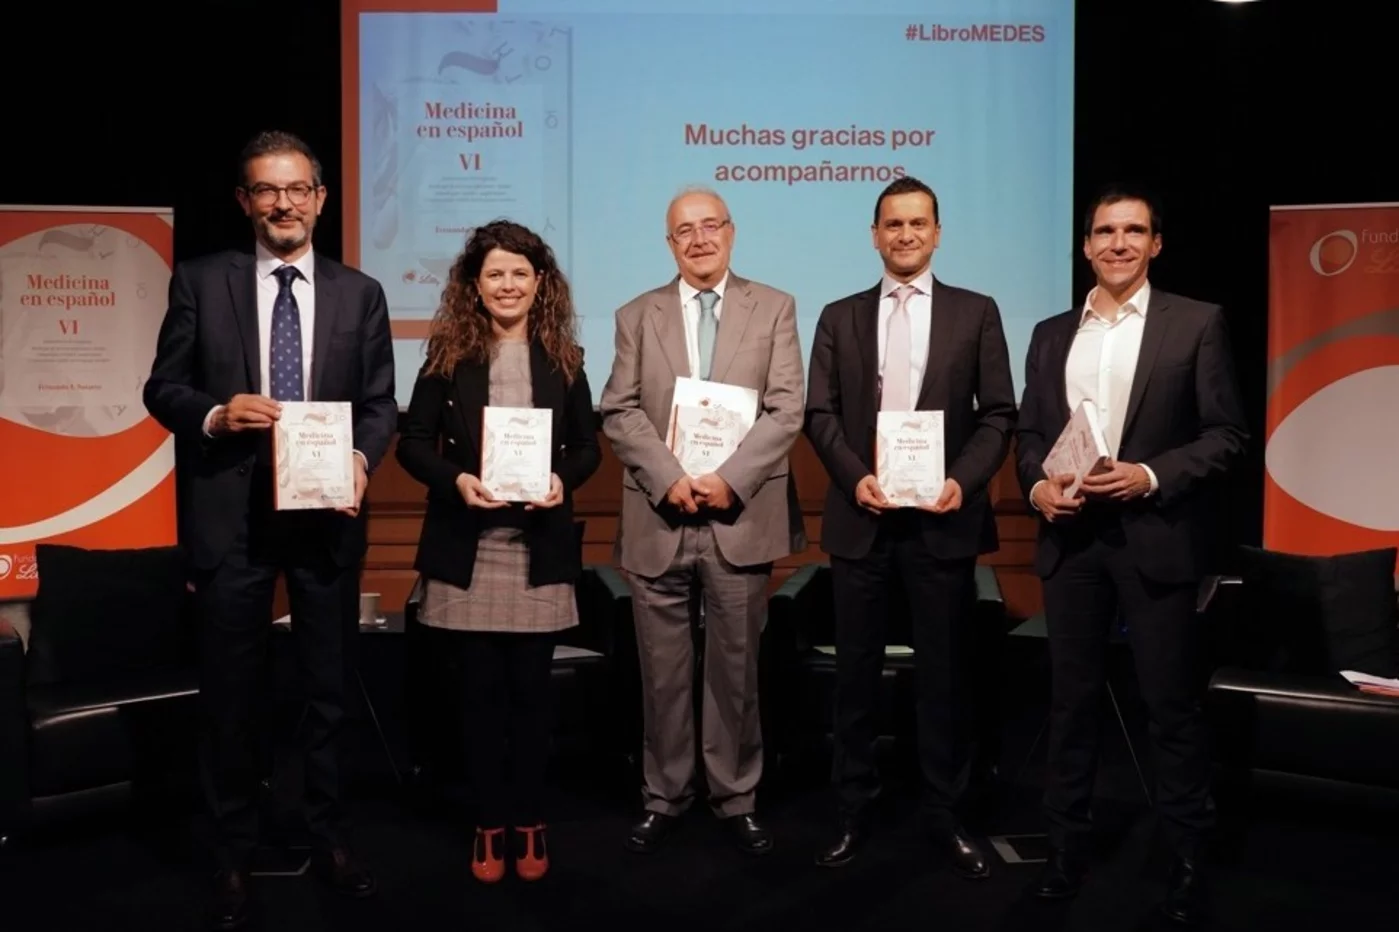 El 14 de noviembre se presentó en el Instituto Cervantes de Madrid el tomo sexto de 'Medicina en español', publicado por la Fundación Lilly en colaboración con Diario Médico, Ediciones Cálamo y la plataforma Cosnautas.